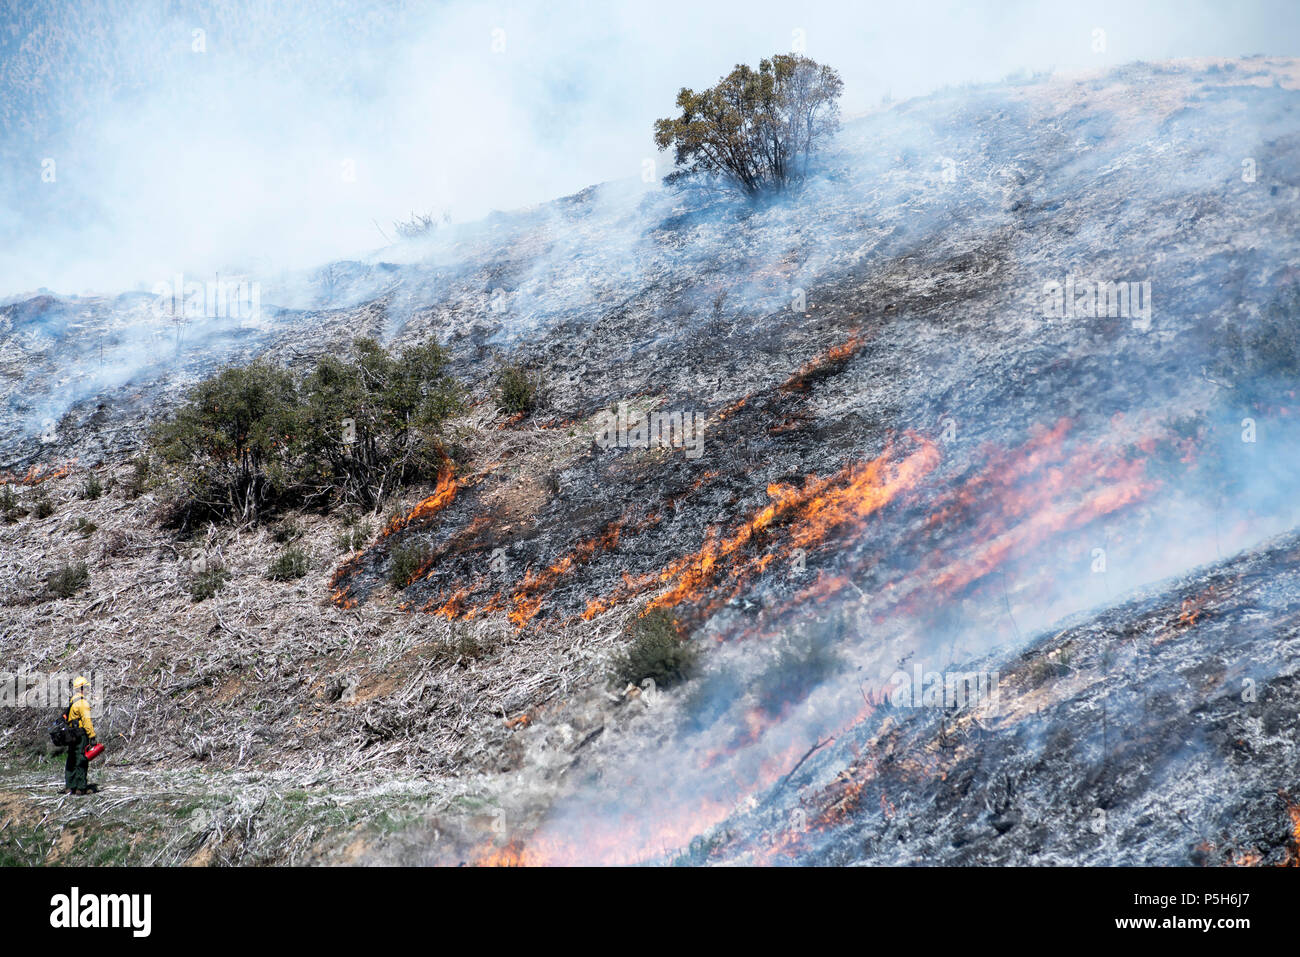 ANGELES National Forest, CA - 29. März: Eine kontrollierte in Angeles National Forest, Kalifornien am 29. März 2018 zu brennen. Stockfoto